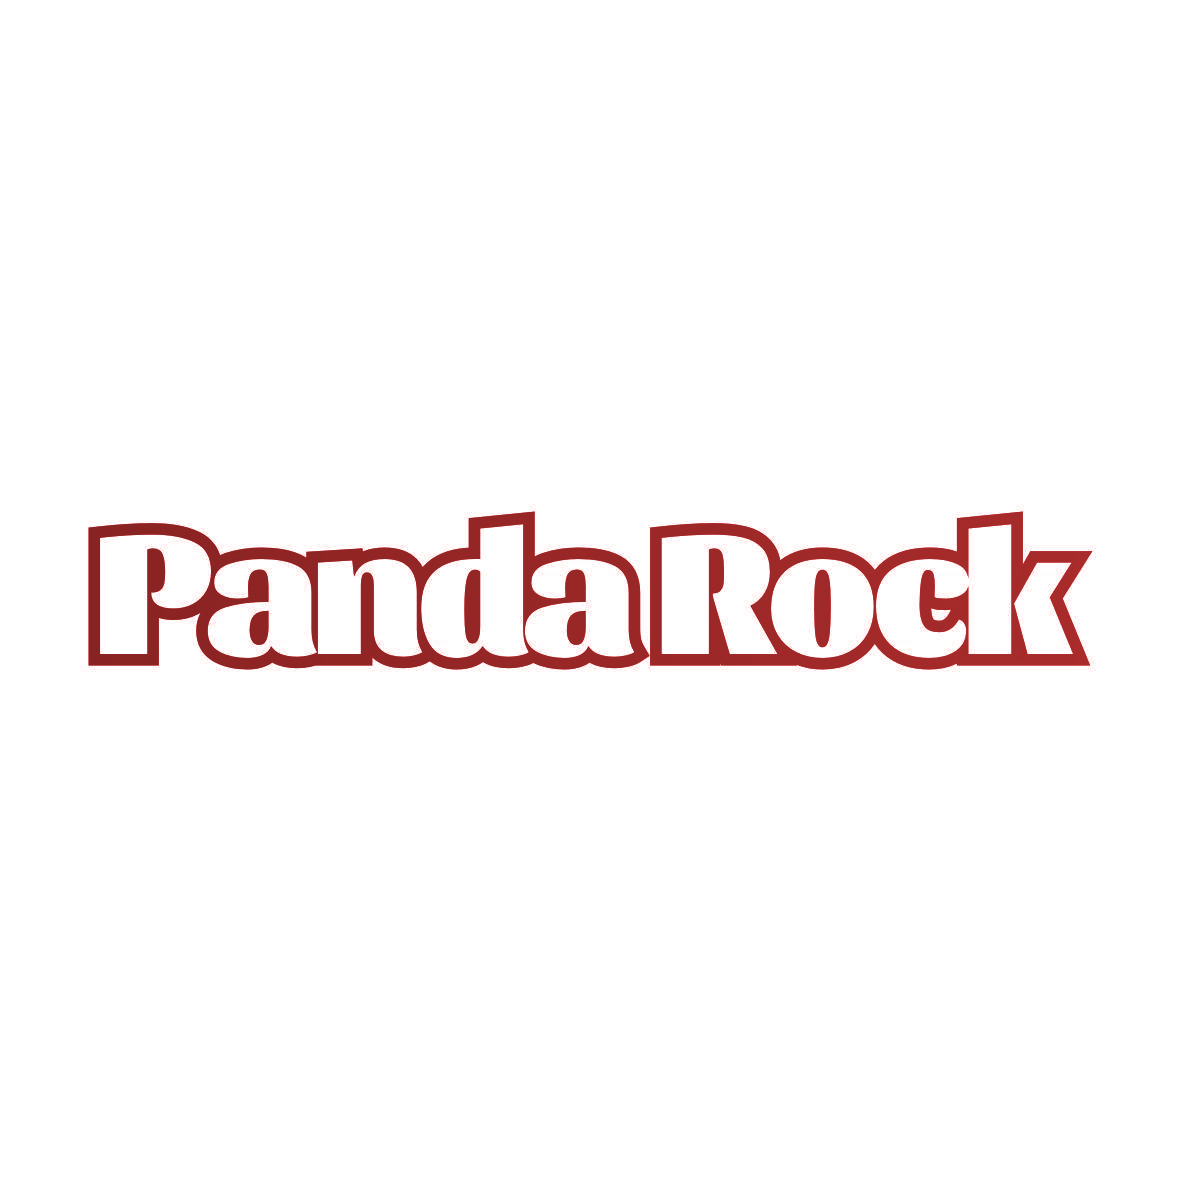 PANDA ROCK